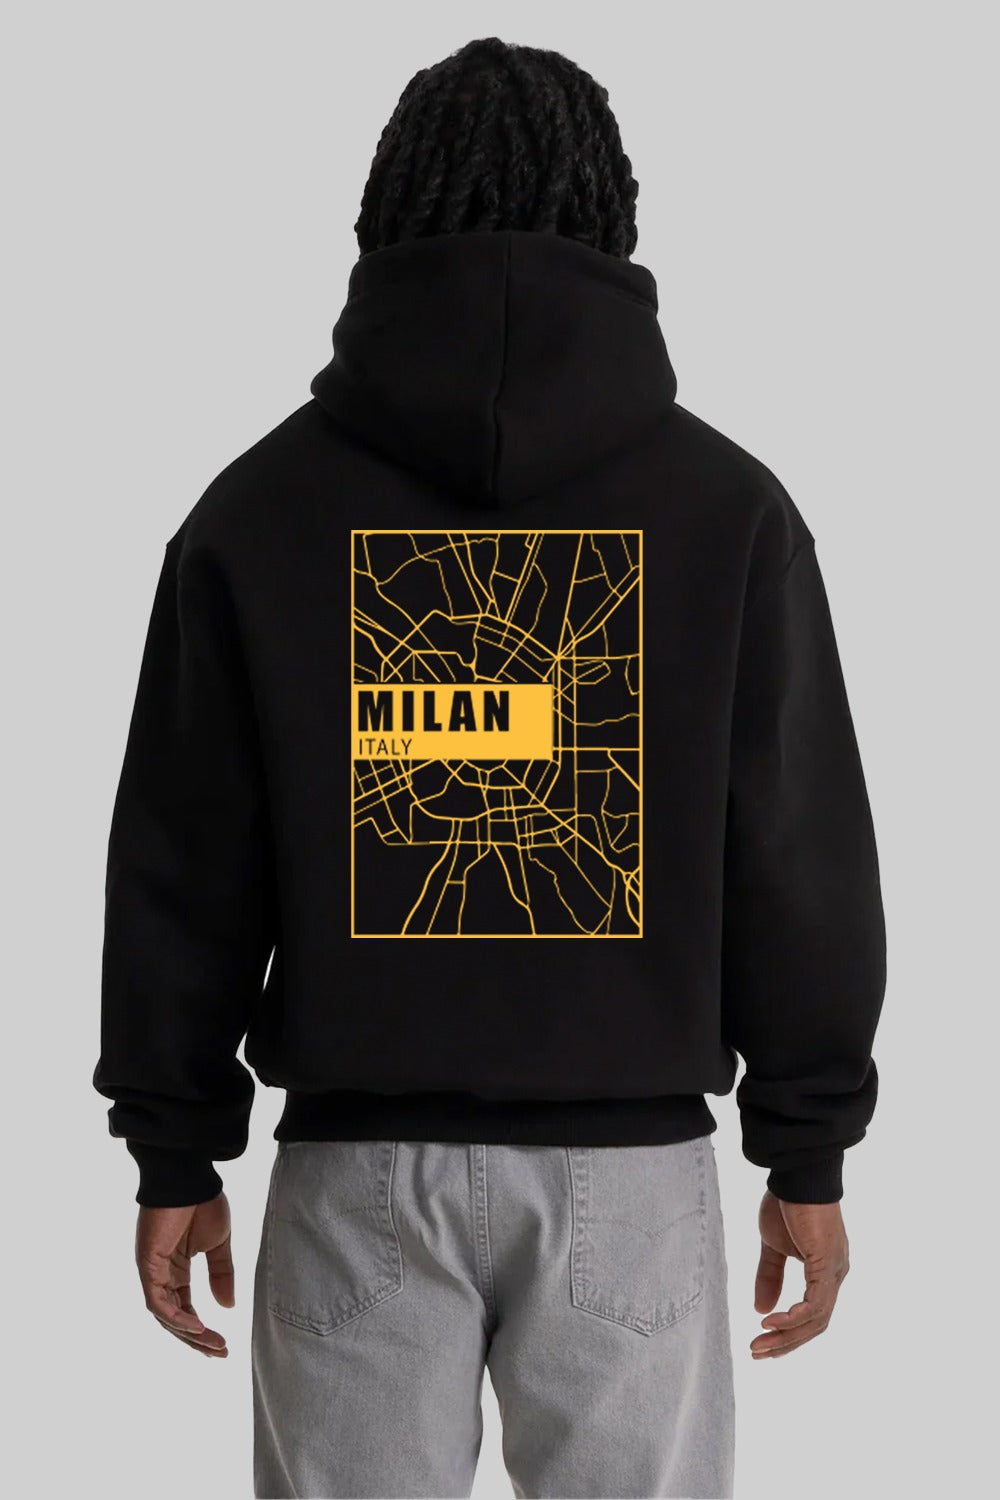 Milan (Back Graphic Print)